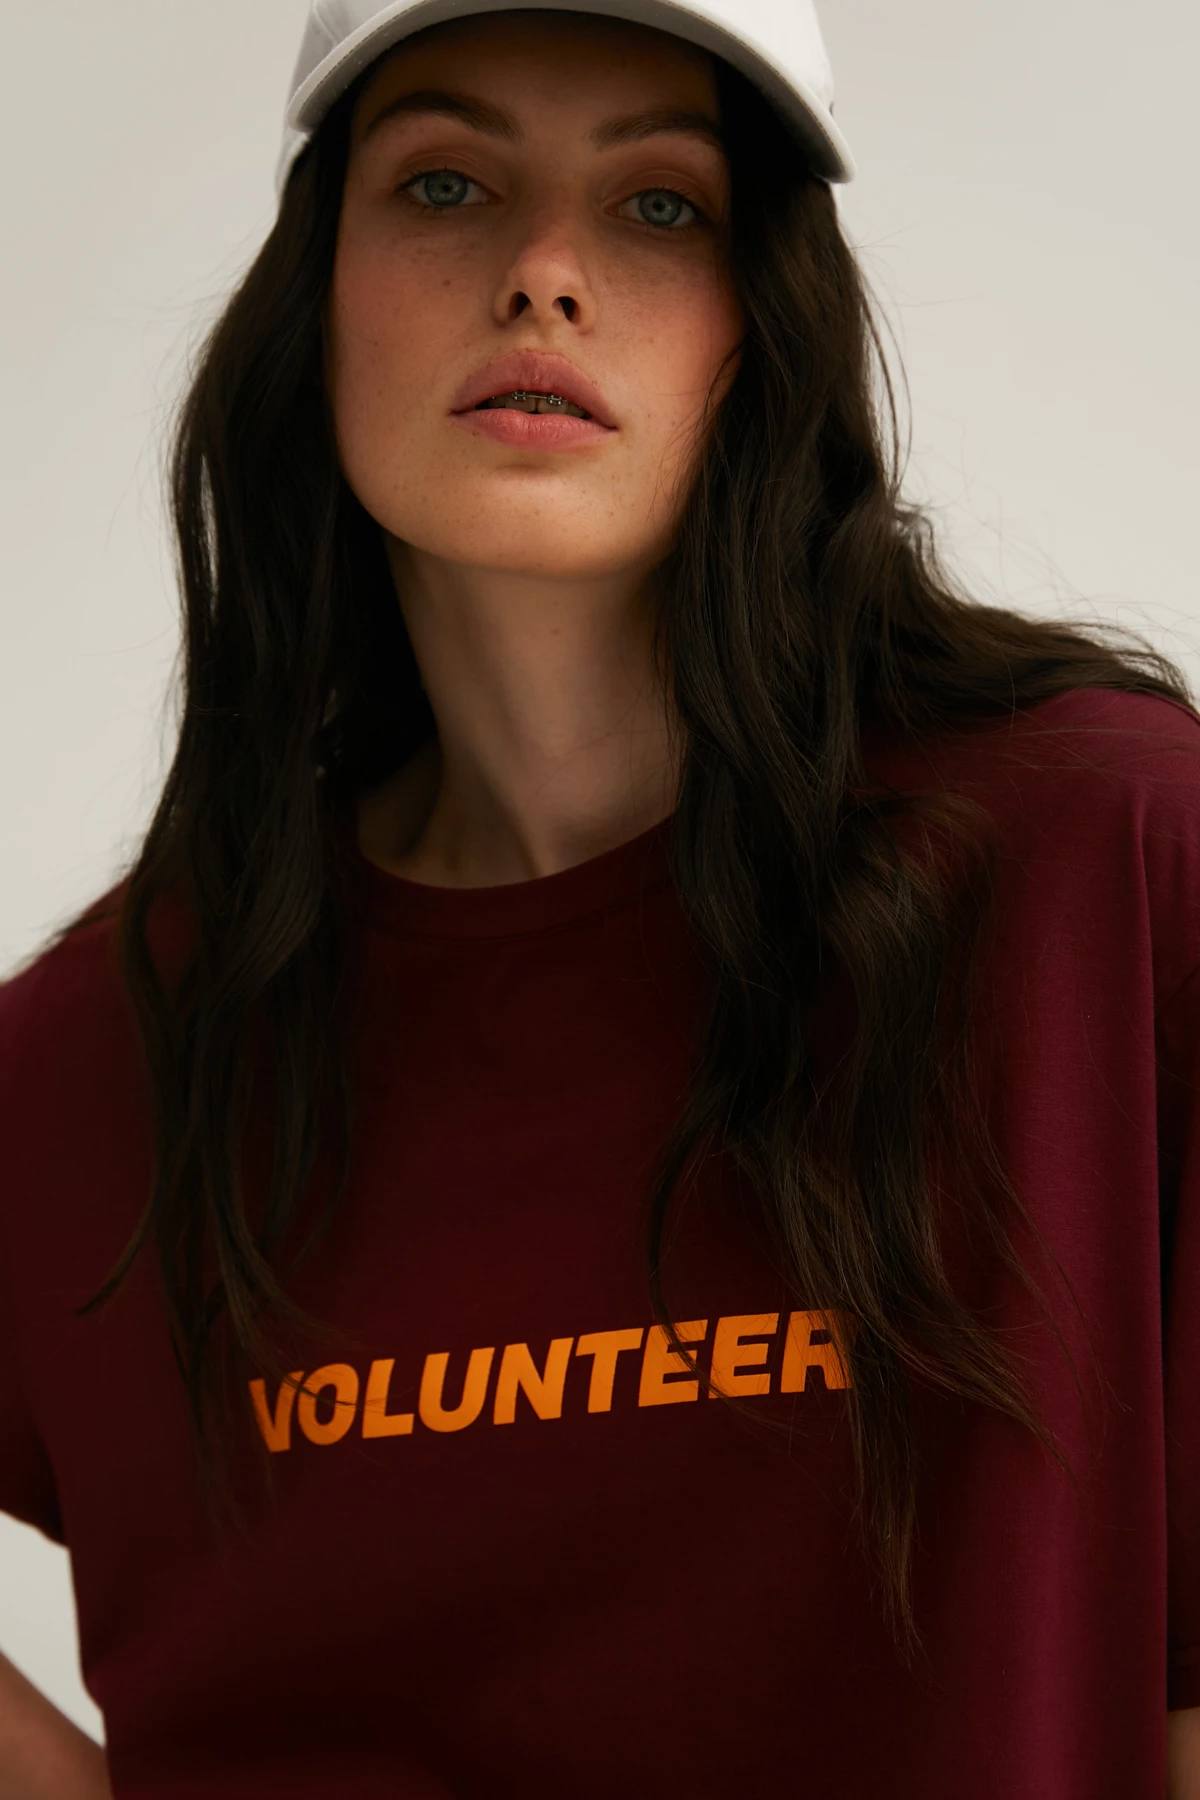 Бордова унісекс-футболка з написом "Volunteer" з трикотажу, фото 7